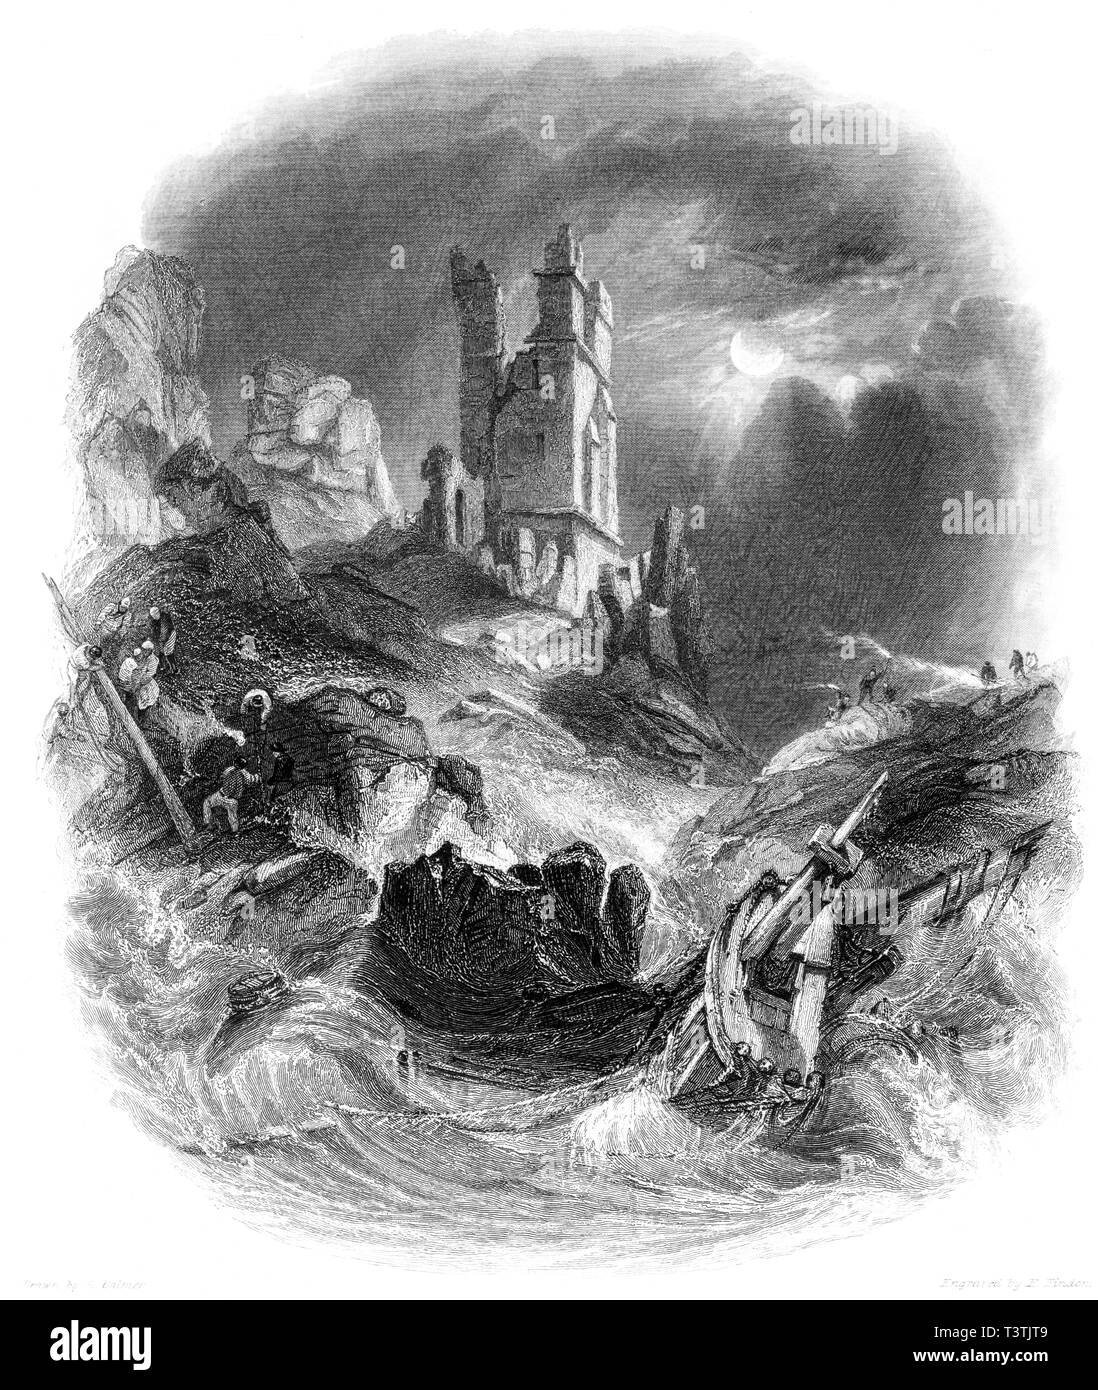 Une gravure du château de Dunstanburgh Dunstanborough () par moonlight numérisées à haute résolution à partir d'un livre publié en 1842. Croyait libres de droit. Banque D'Images